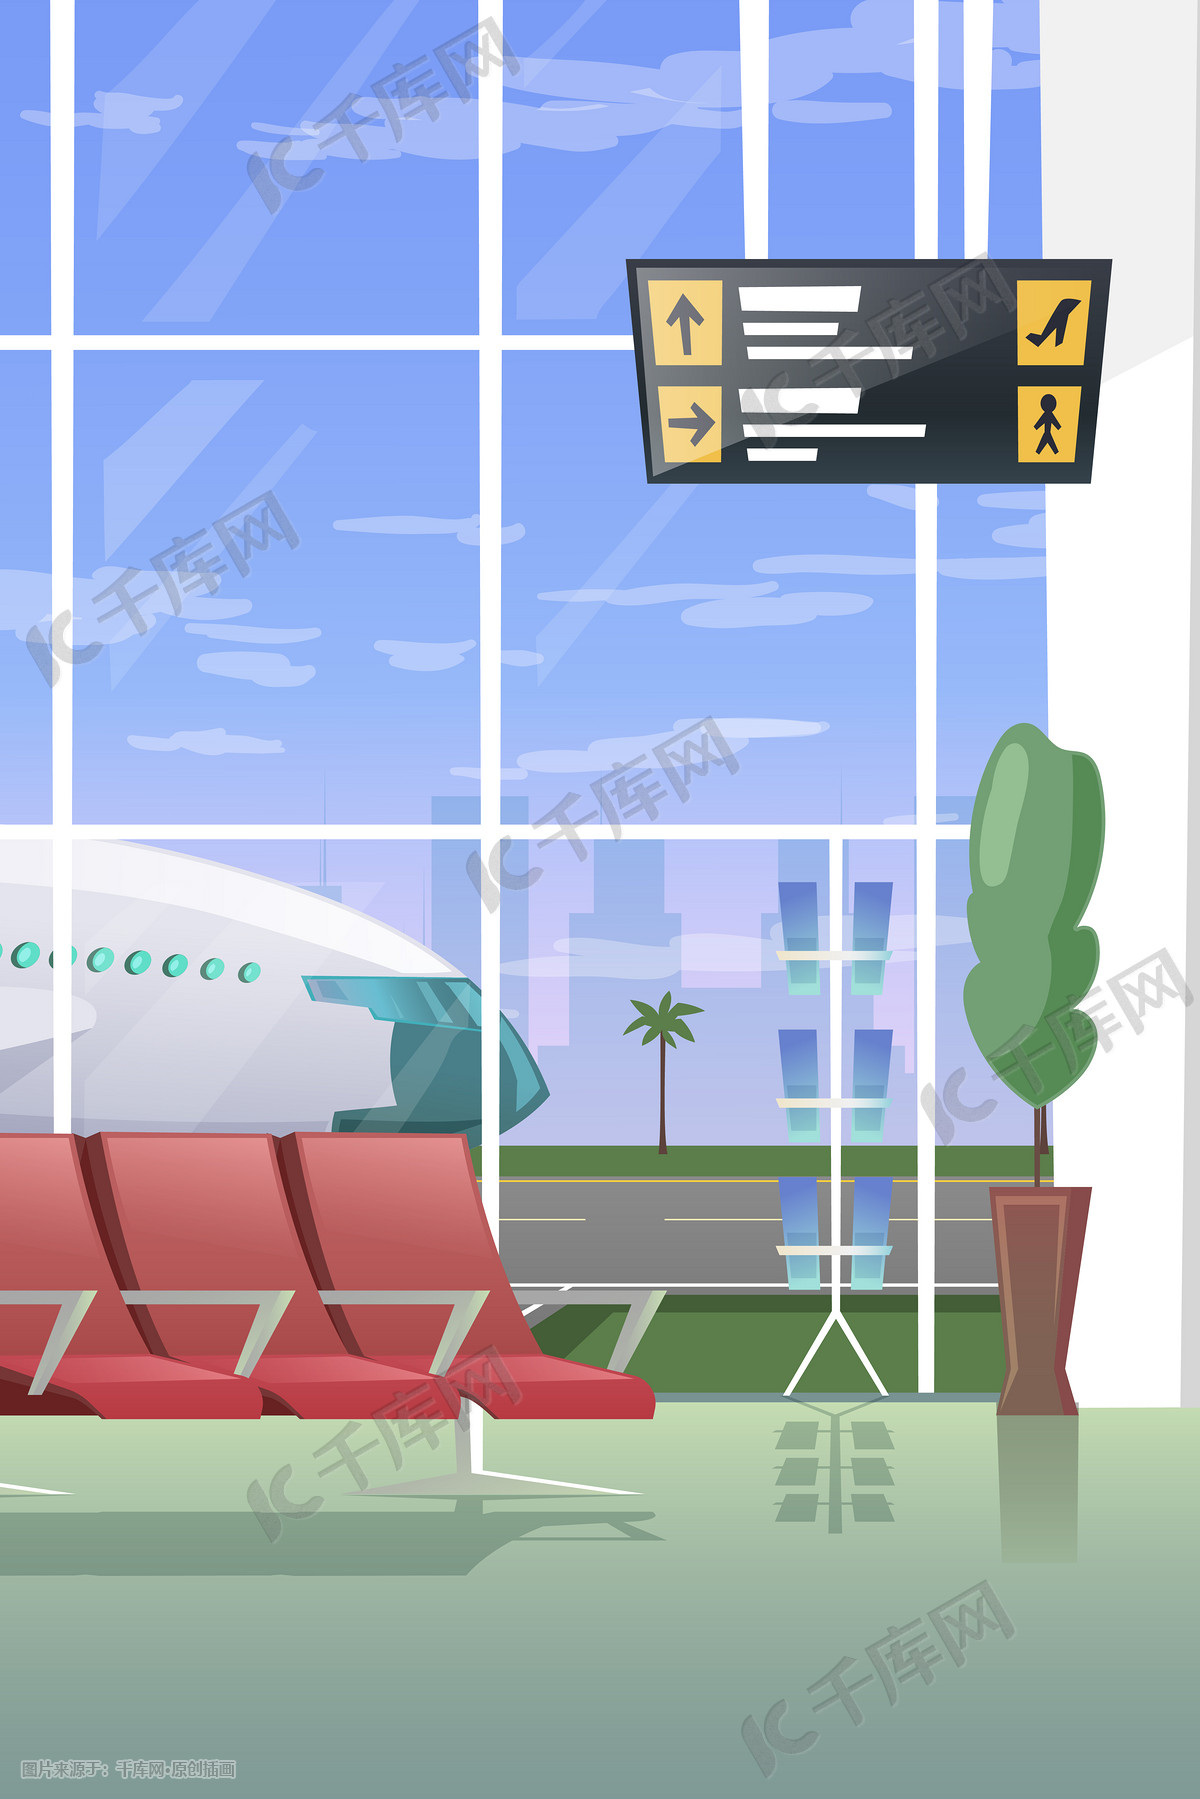 卡通机场运景海报矢量素材背景素材图片下载-素材编号13335832-素材天下图库